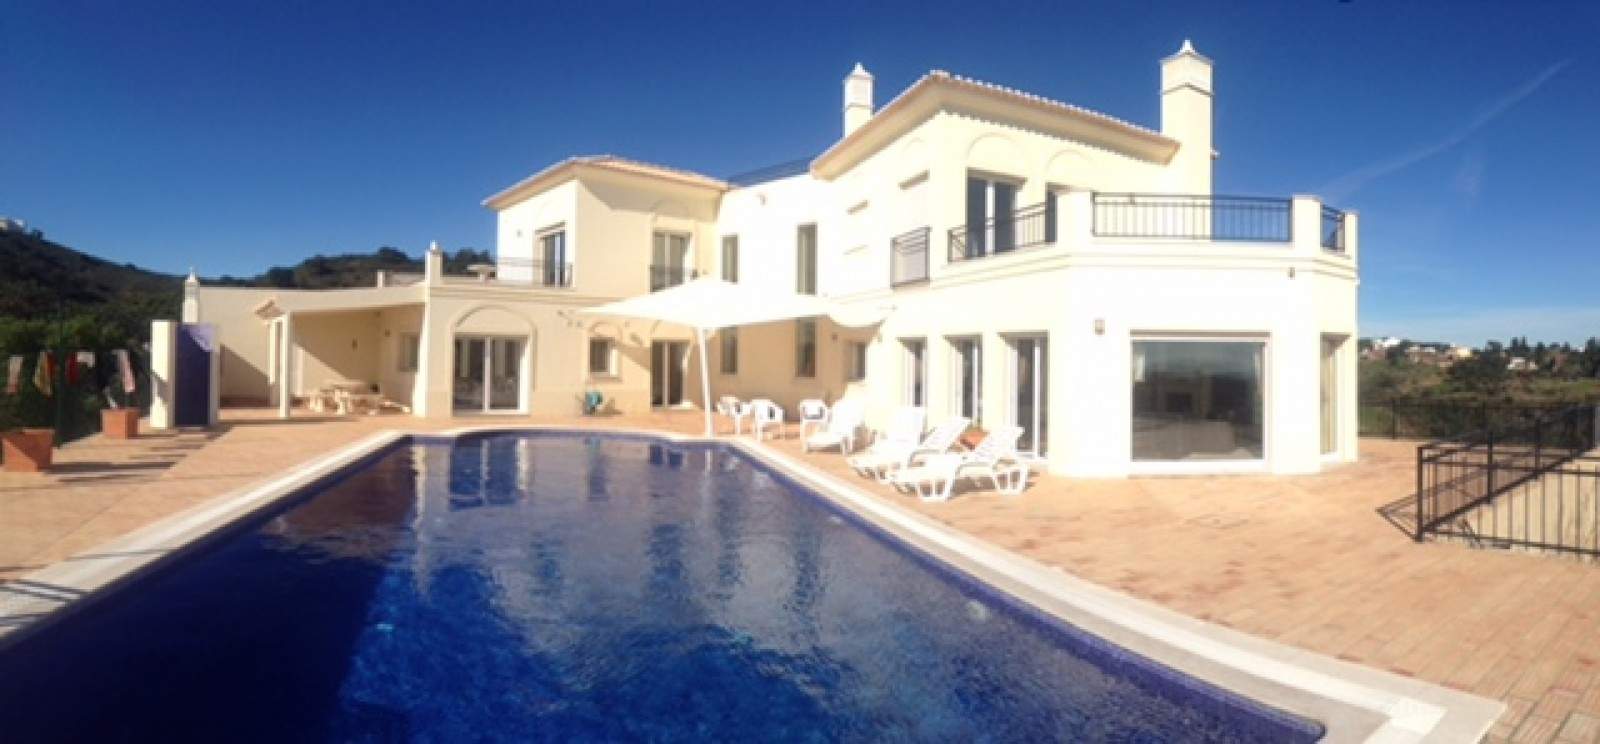 Moradia T4 com piscina, para venda em Tavira, Algarve_201173